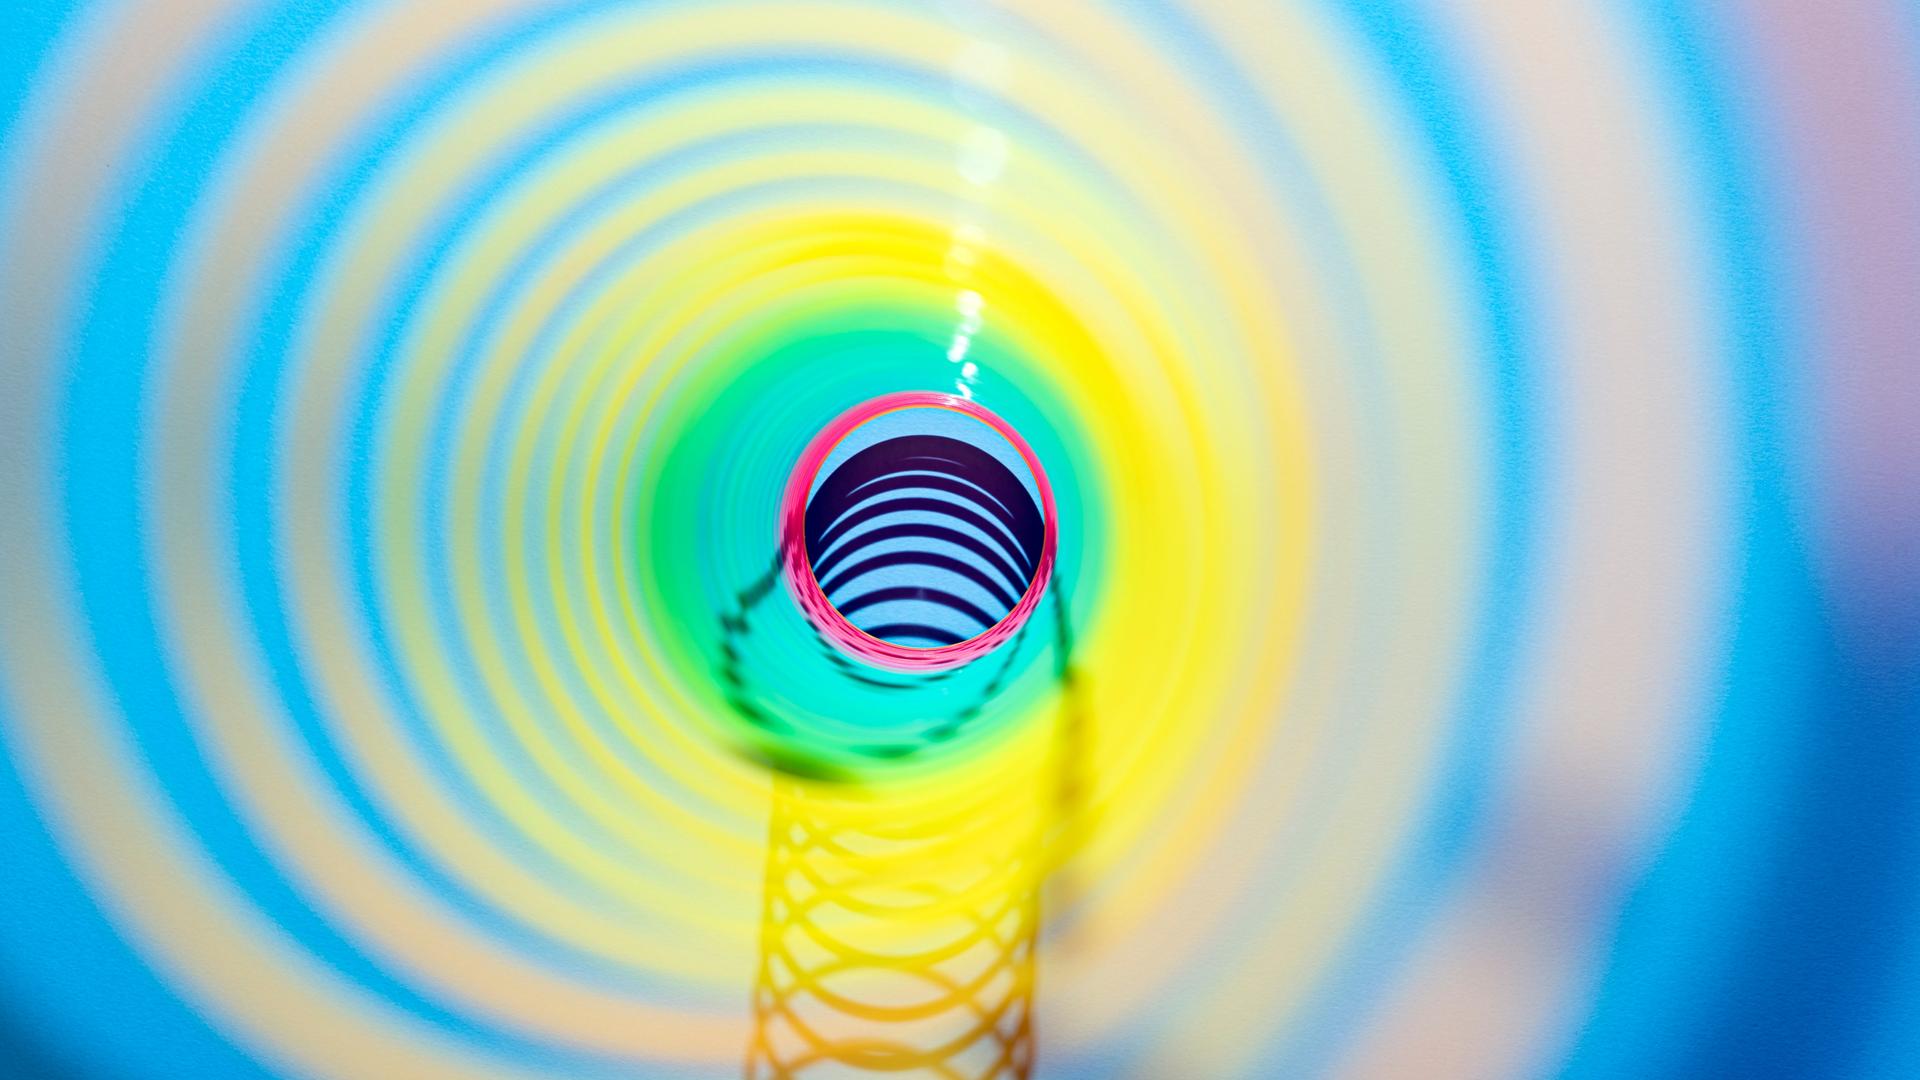 Blick durch ein buntes, spiralförmiges Spielzeug.